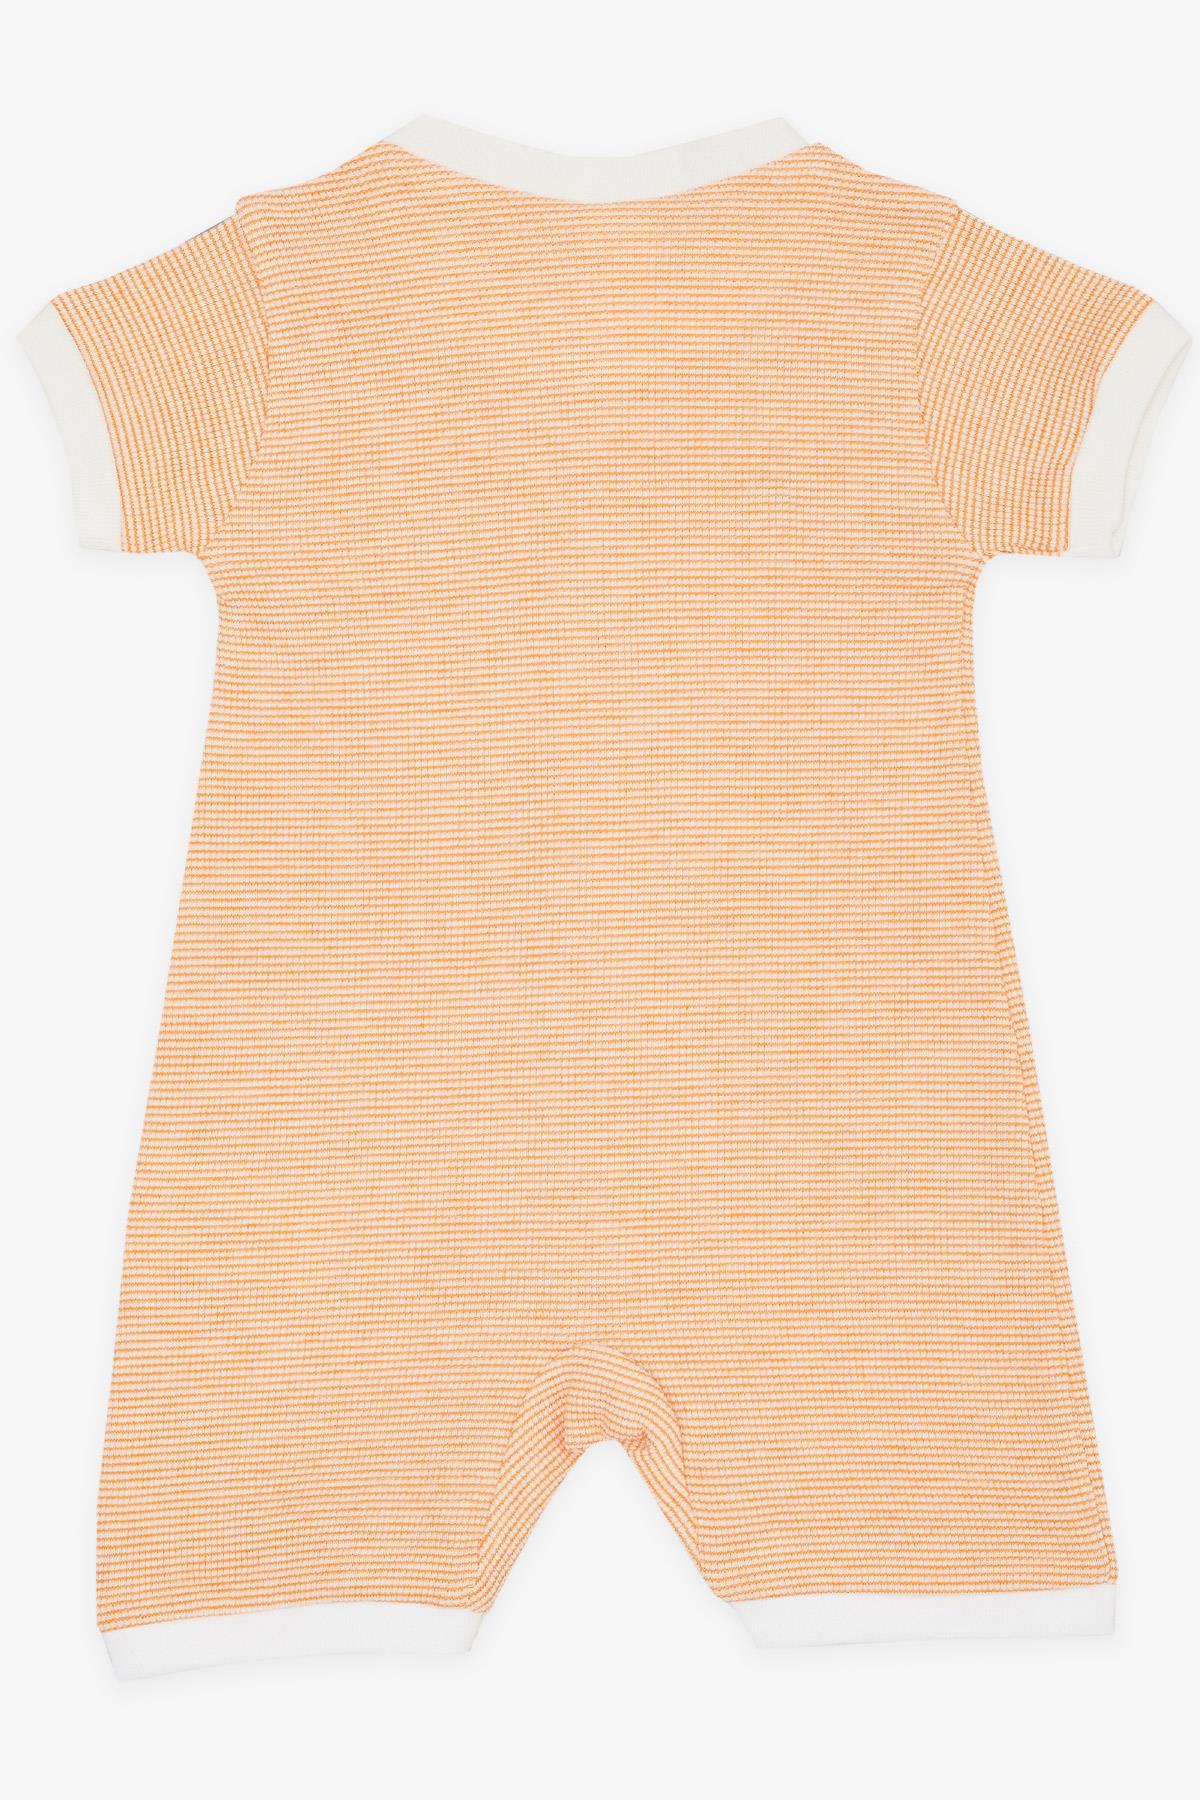 Kız Bebek Şortlu Tulum Minik Kare Desenli Turuncu 0-9 Ay - Pamuklu Bebek  Tulumları | Breeze